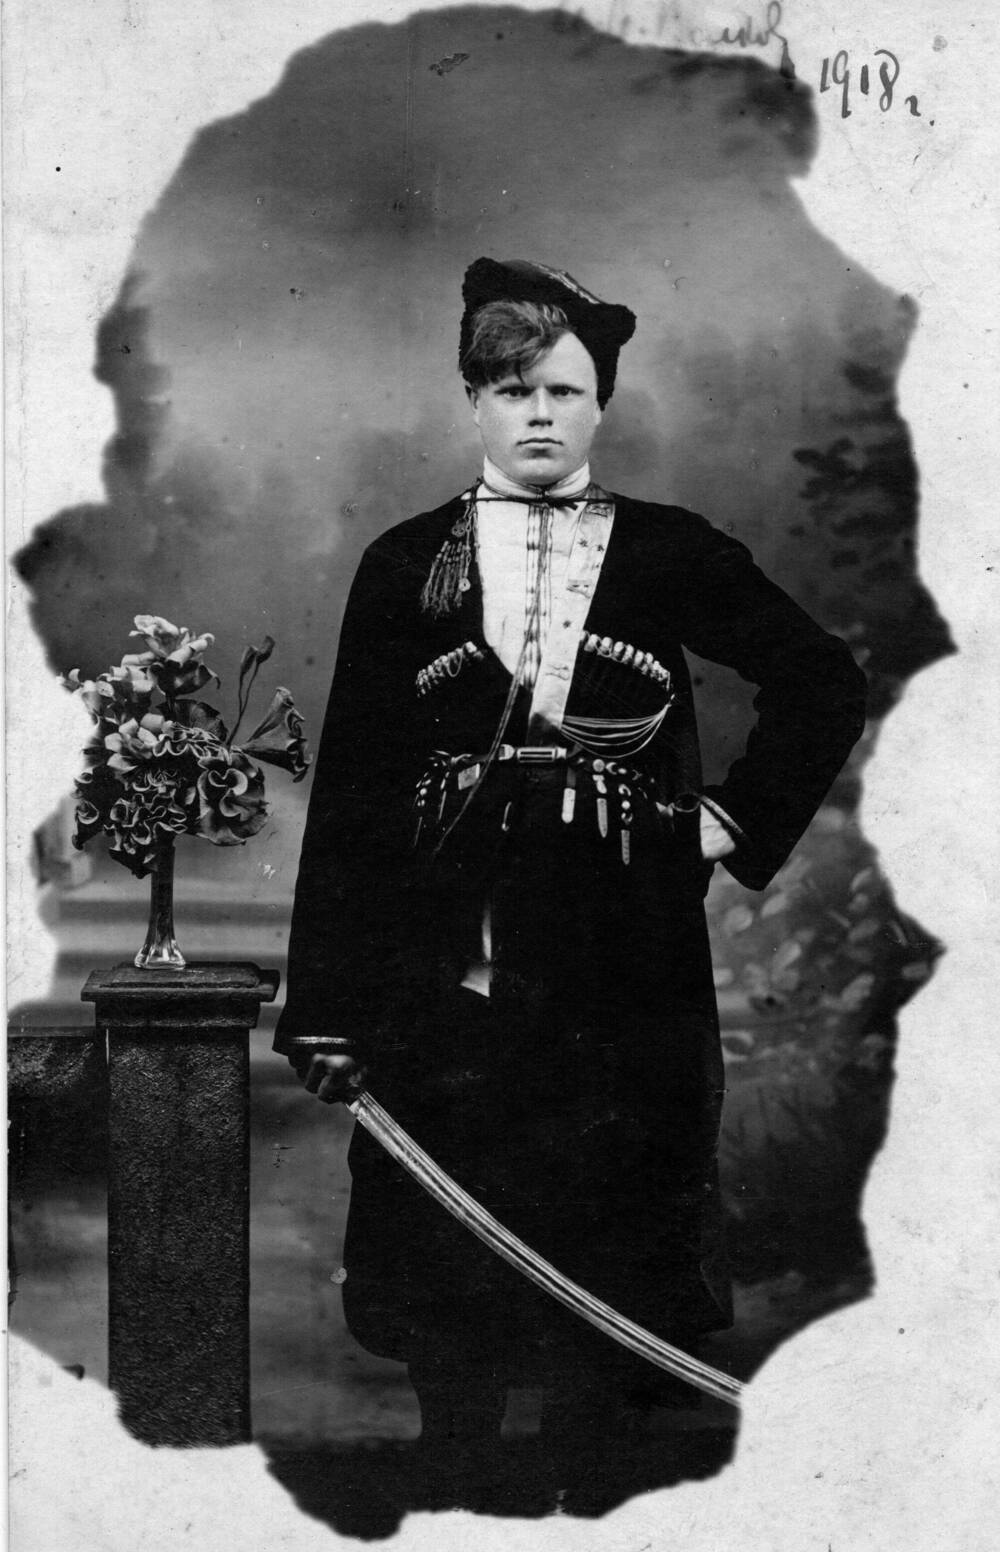 Фото: Волков Илья Александрович, уроженец д. Цилиба Яренского уезда, отец Волкова Юрия Ильича, 1918 г.